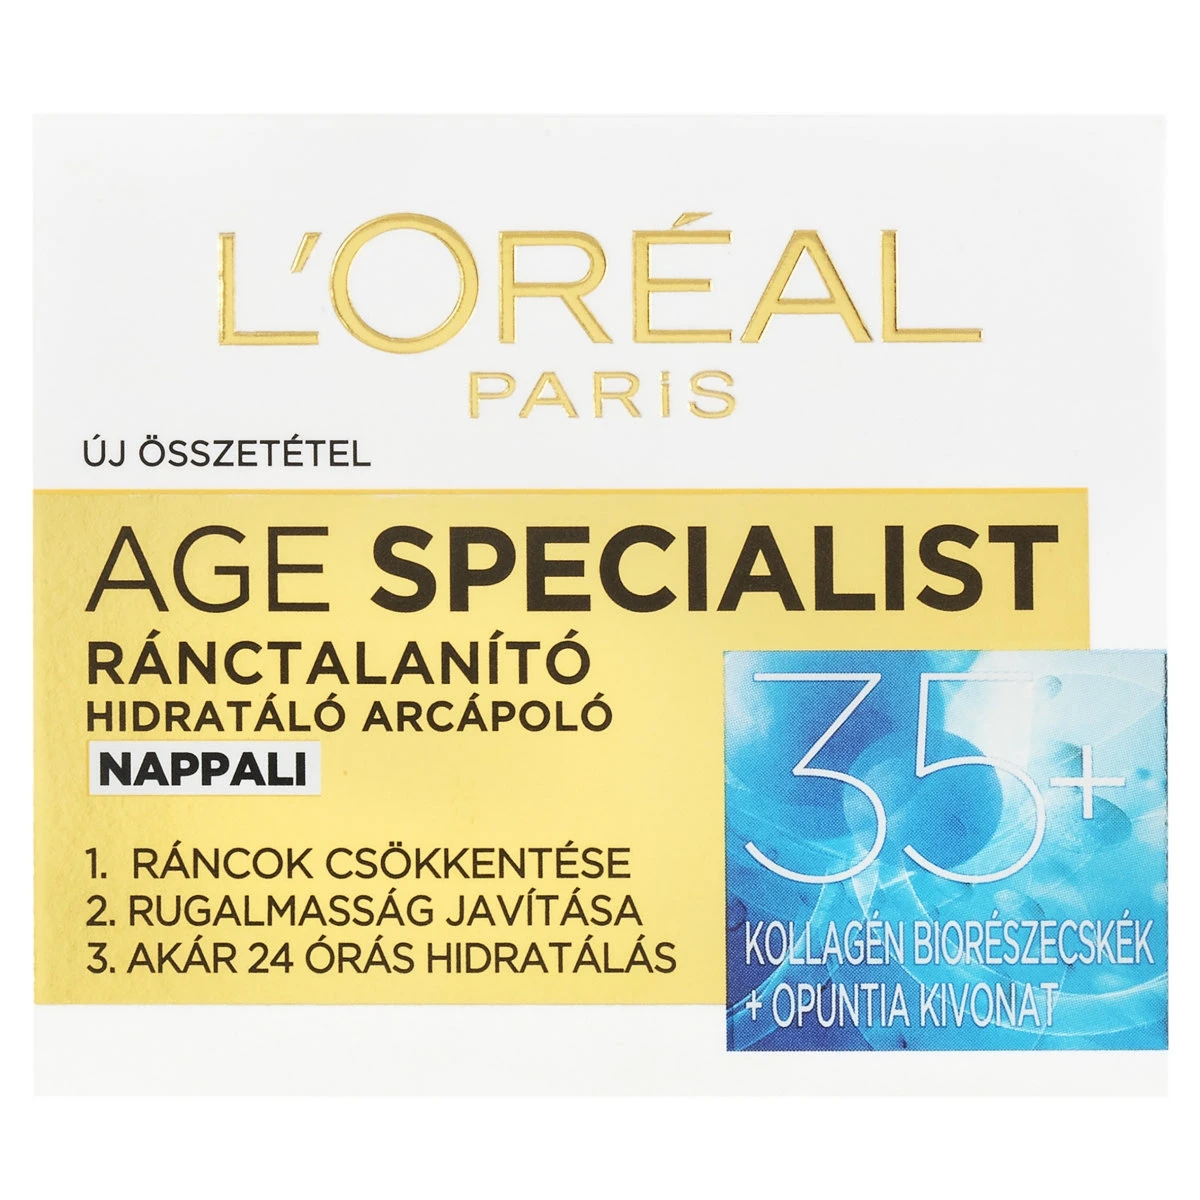 L'ORÉAL PARIS Age specialist ránctalanító arckrém 35+, 50 ml